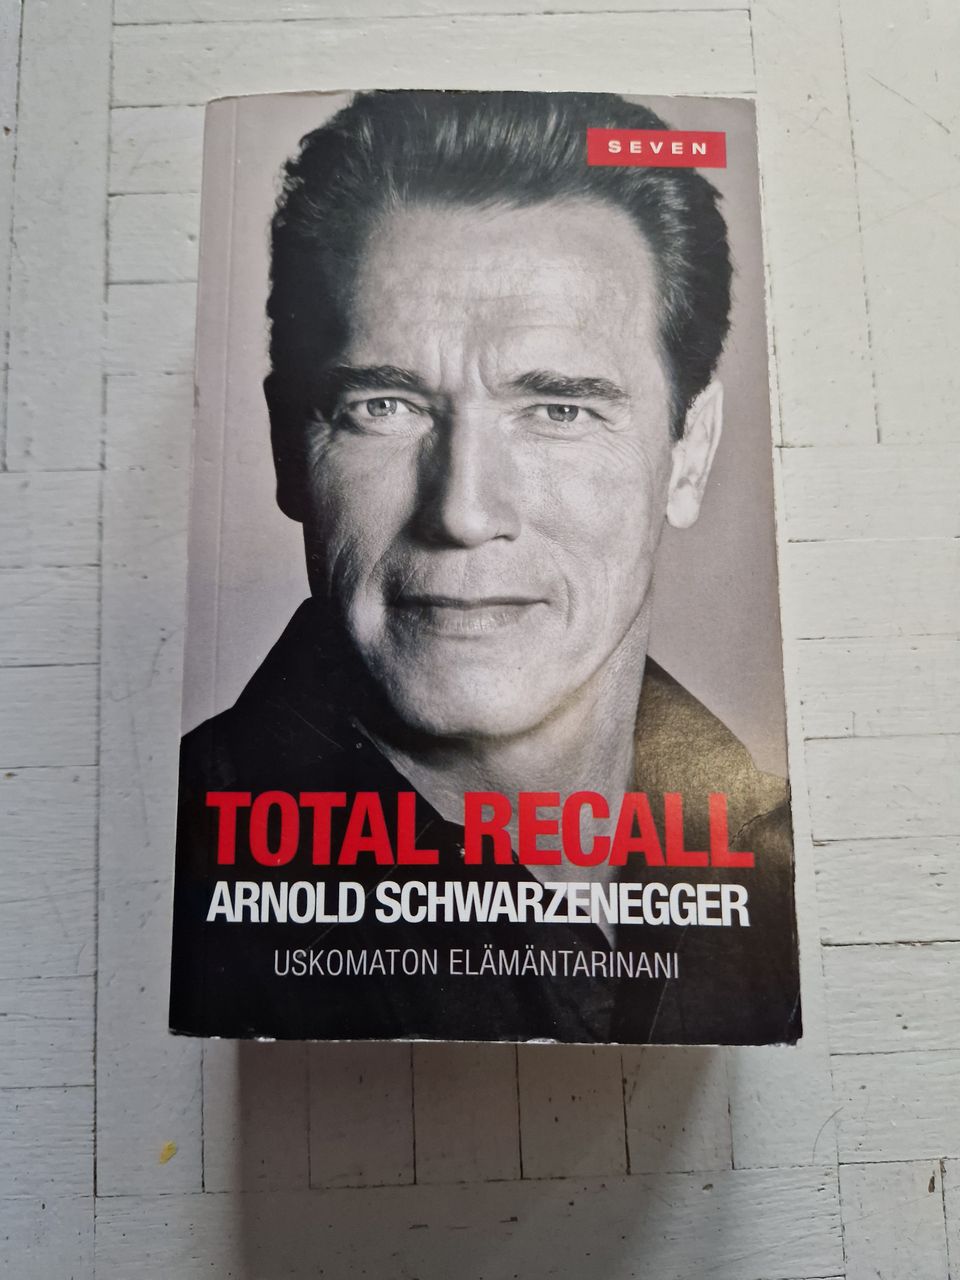 Arnold Schwarzenegger - Total Recall: Uskomaton elämäntarinani